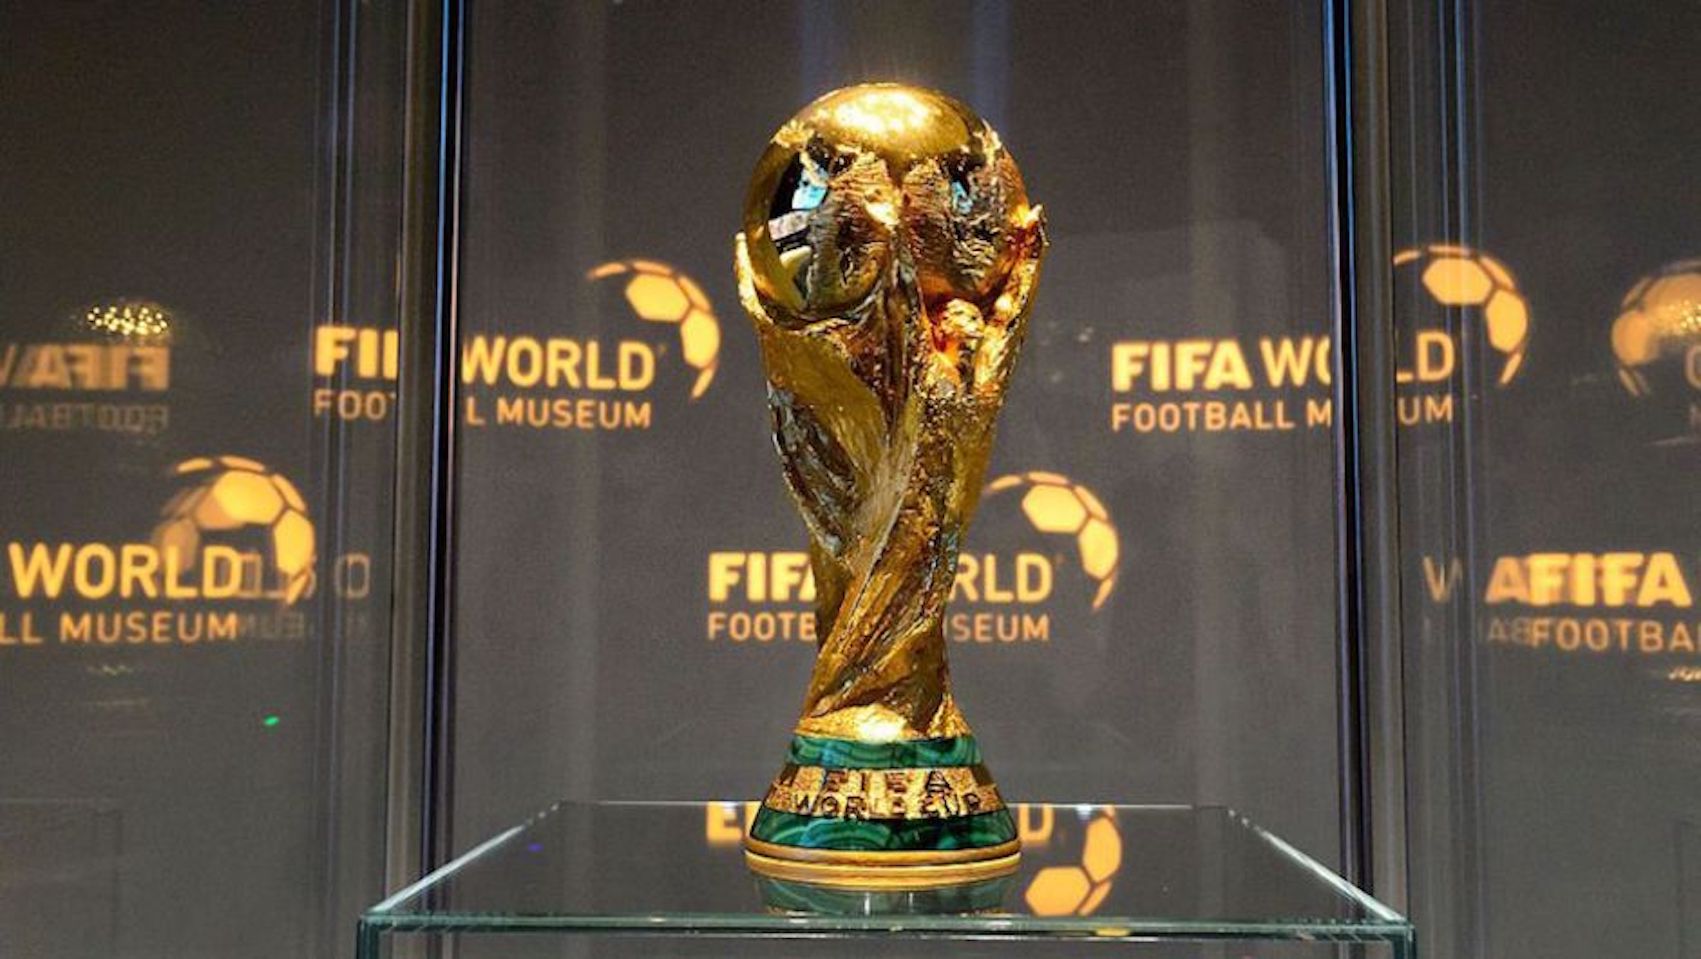 Copa Mundial de Fútbol 2018: Recomendaciones de la argentina - Ámbito Internacional